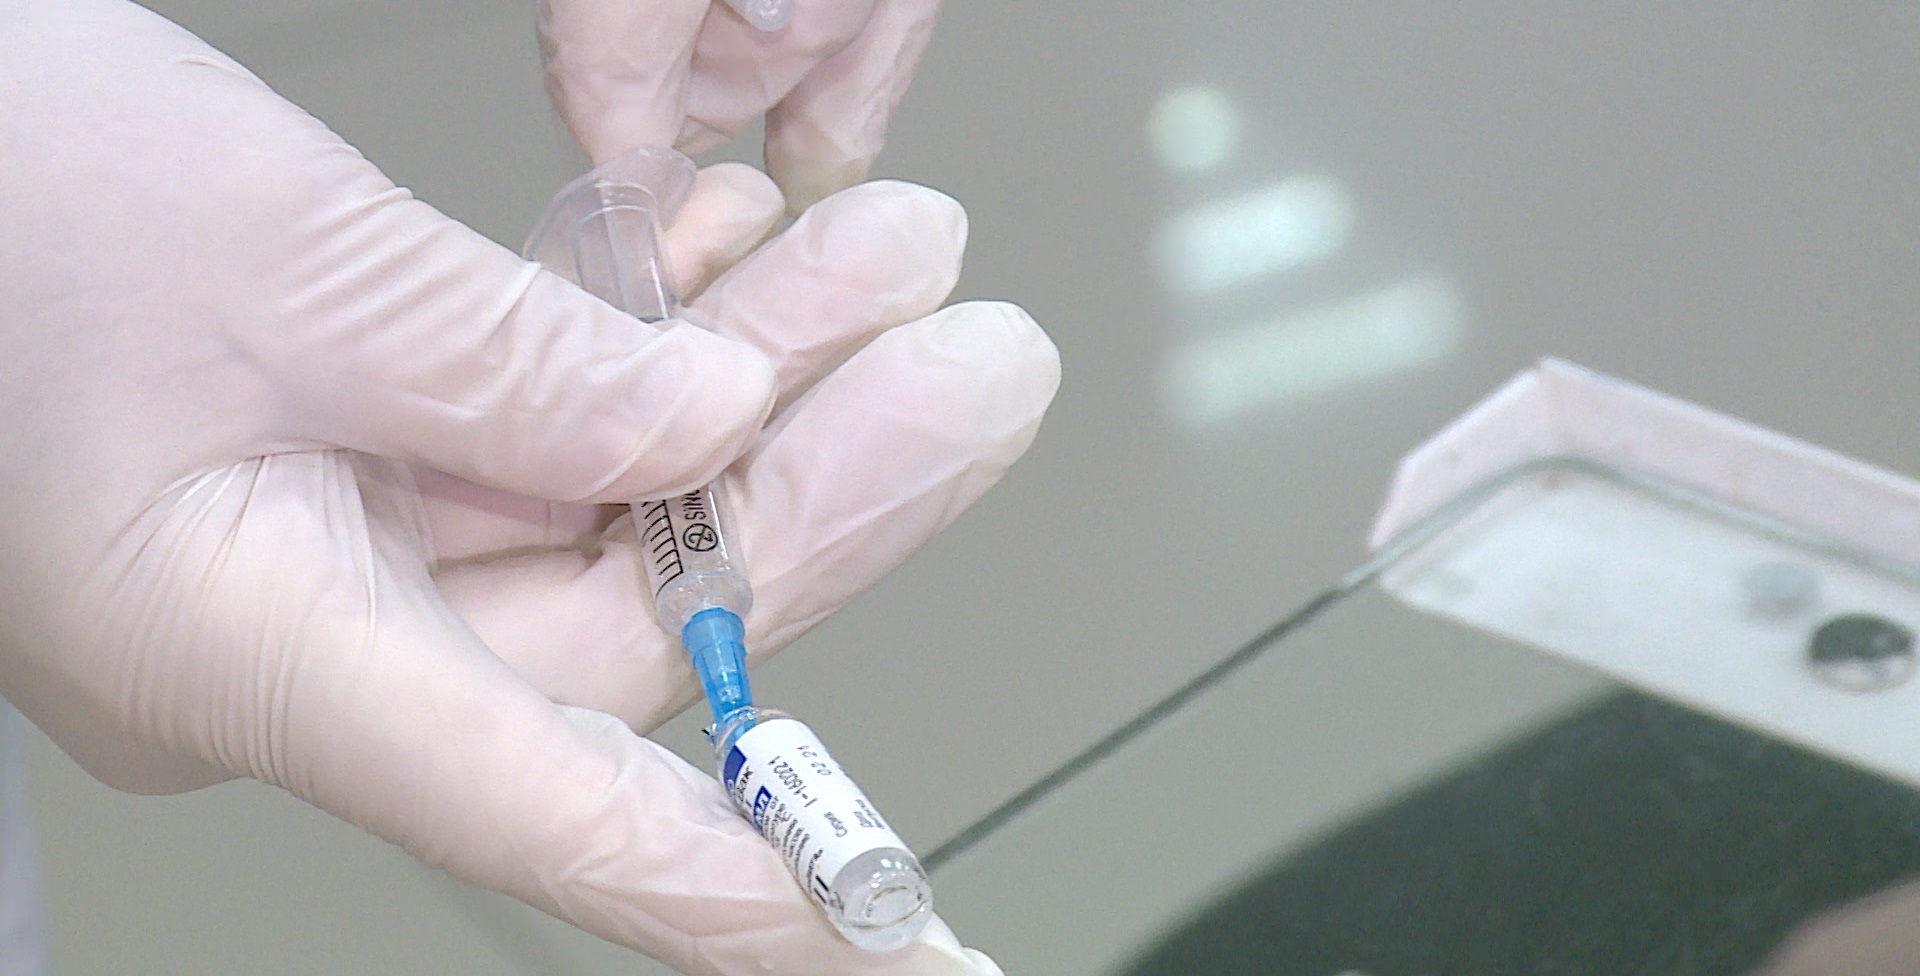 Волгоградская область получила 30 тысяч ампул вакцины «Конвасэл» от коронавирусной инфекции